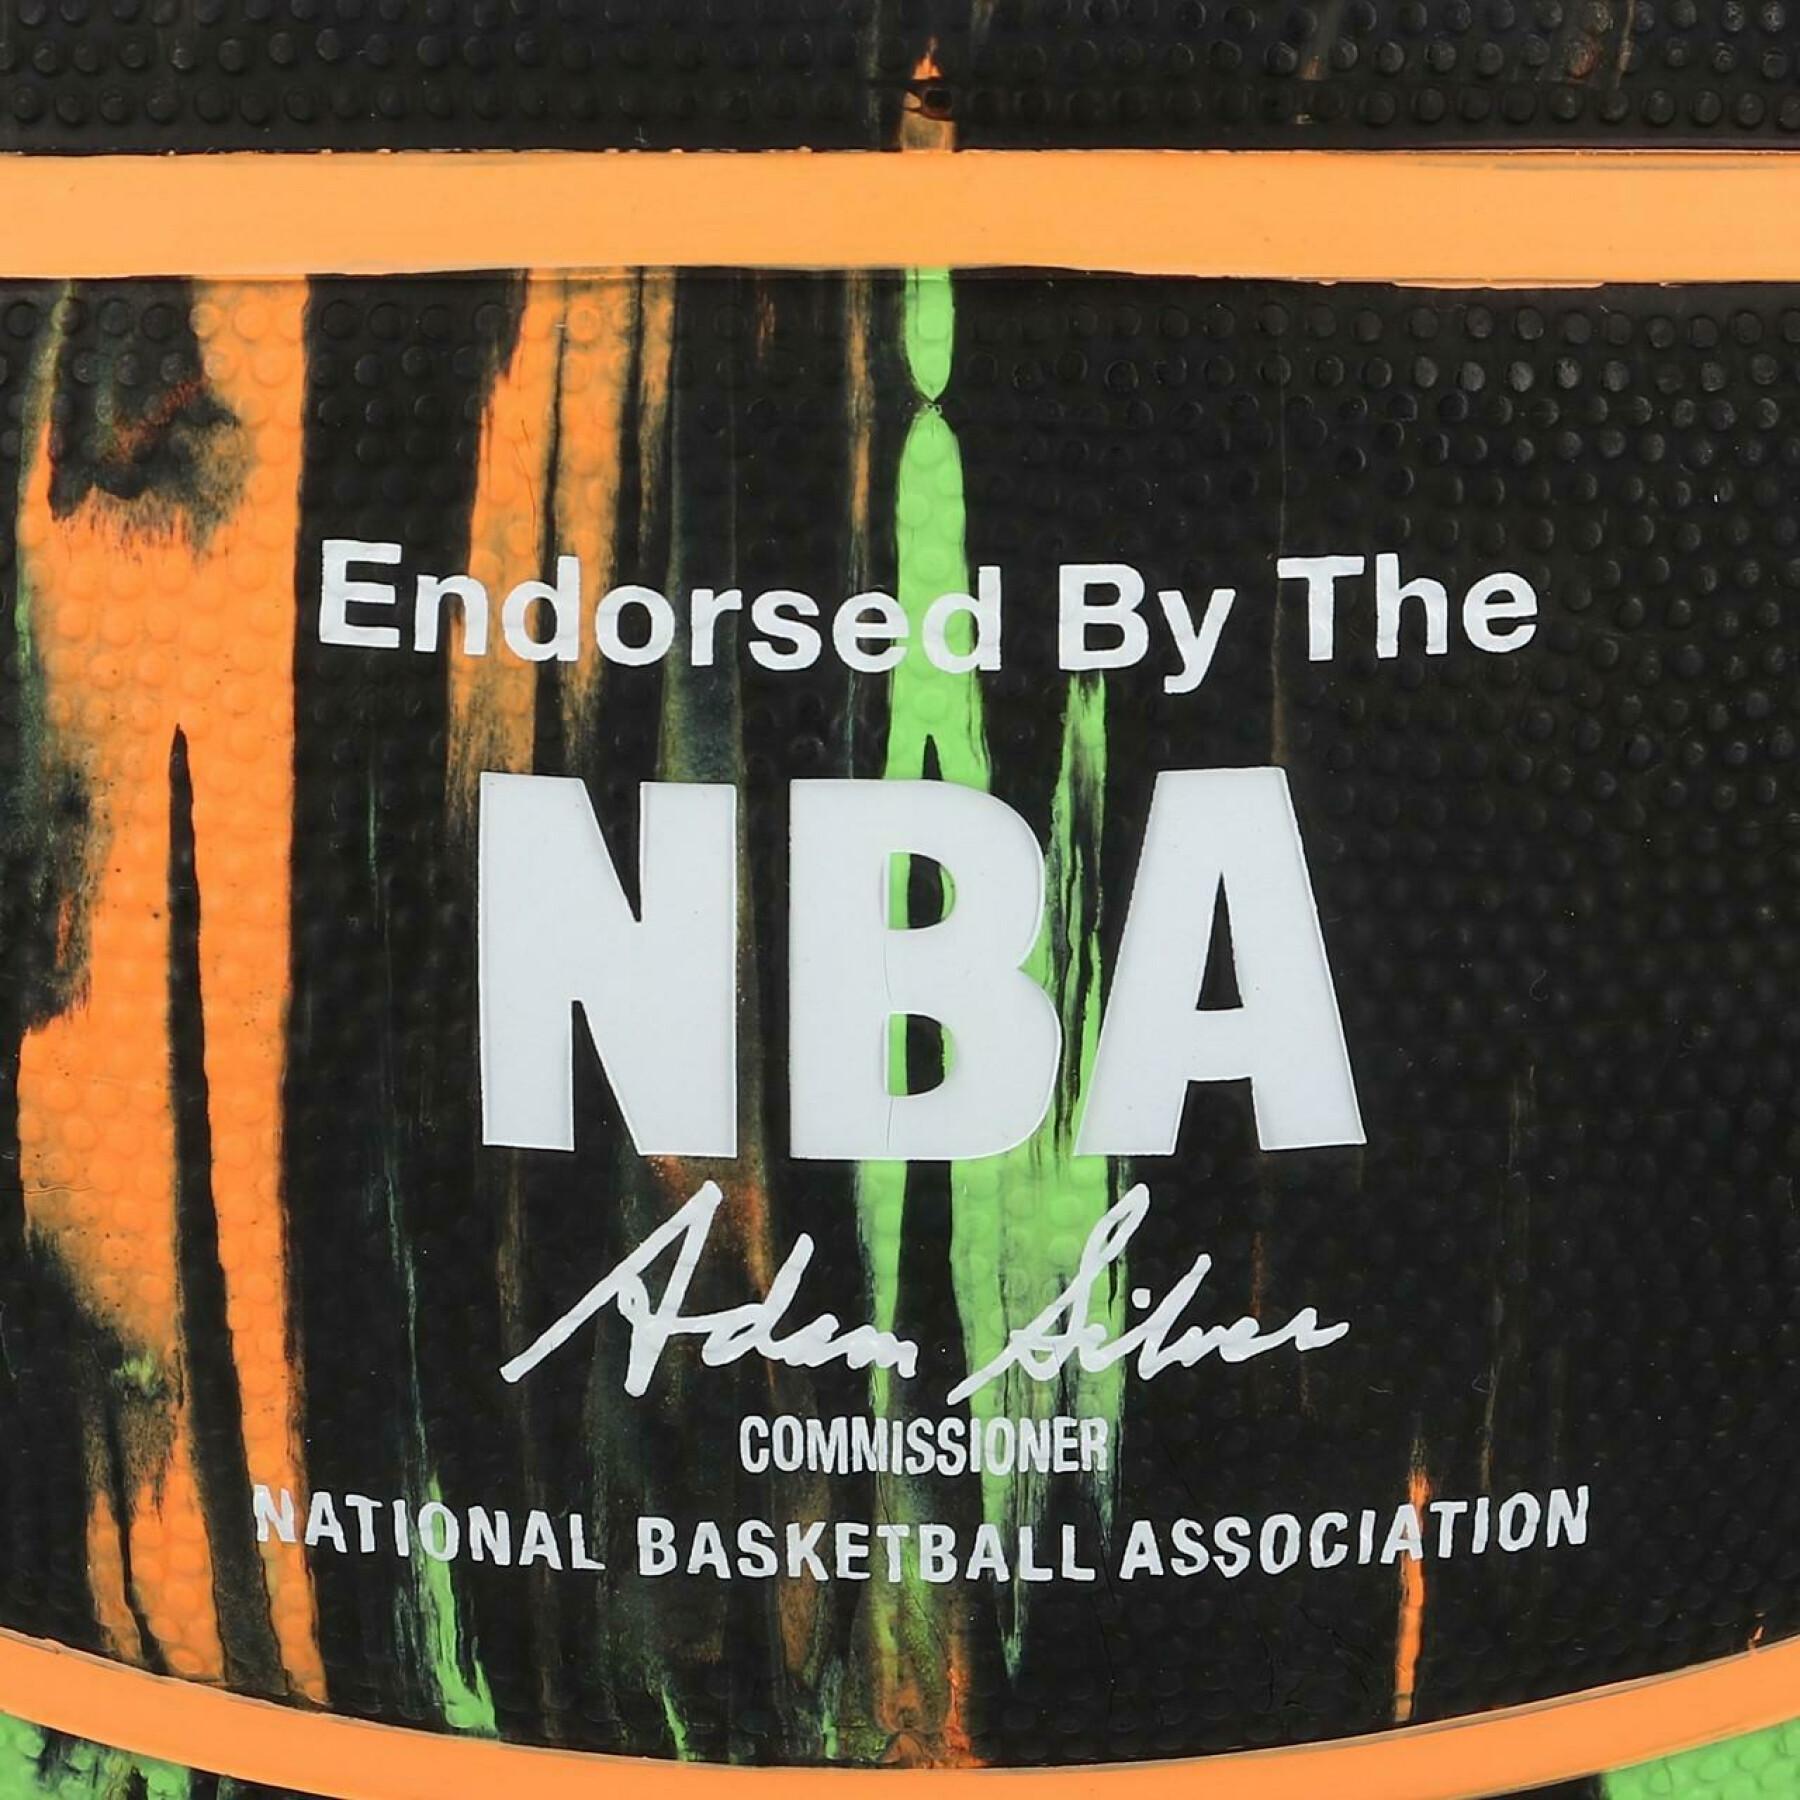 Ballong Spalding NBA Marble (83-882z)